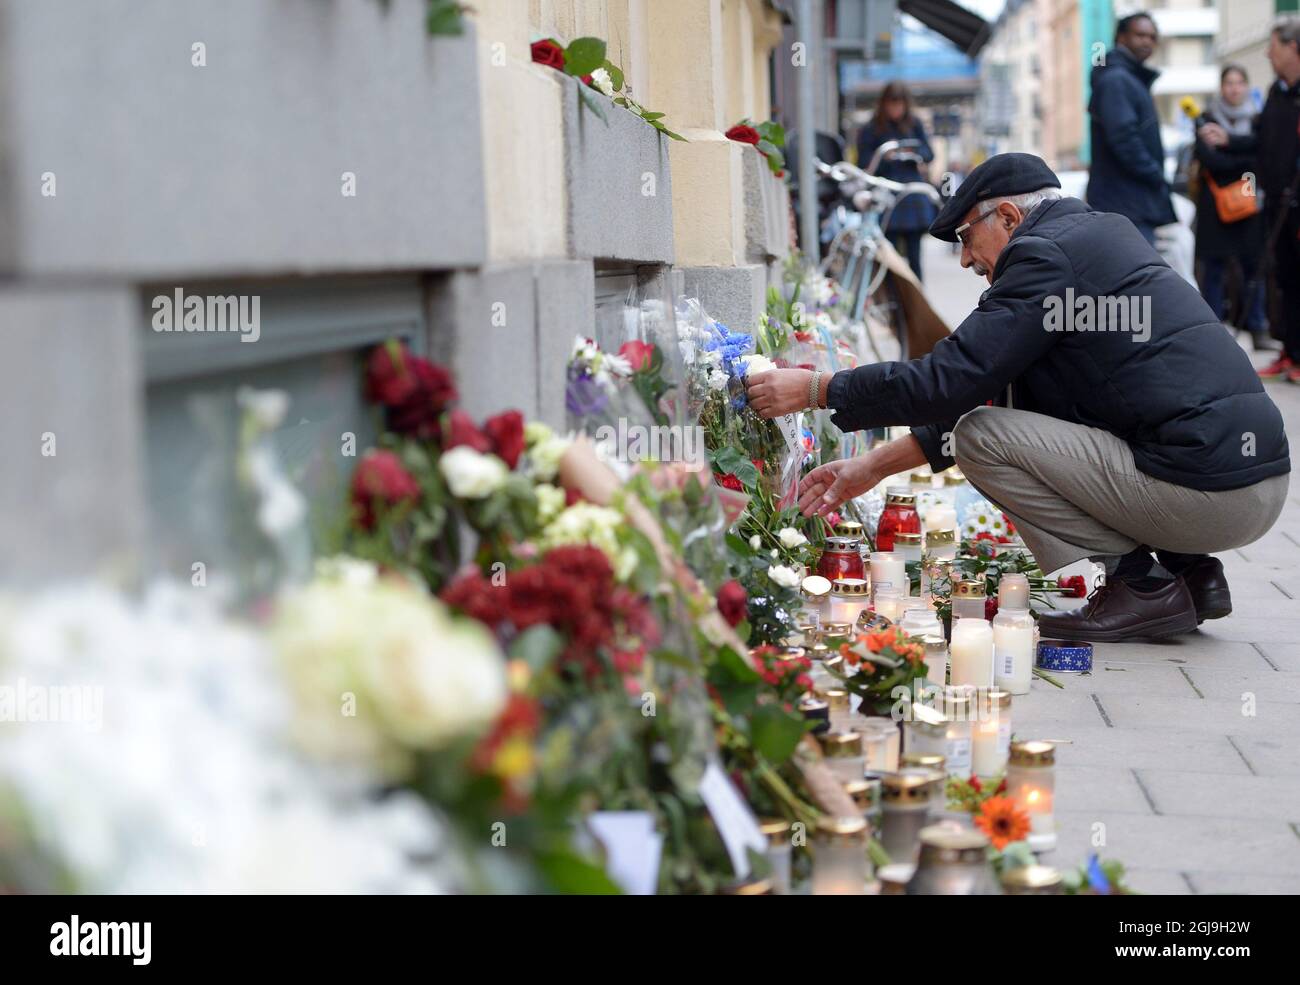 STOCCOLMA 2015-11-16 persone sono viste mettere fiori fuori l'ambasciata francese a Stoccolma, Svezia, 16 novembre 2015. Foto Maja Suslin / TT kod 10300 Foto Stock